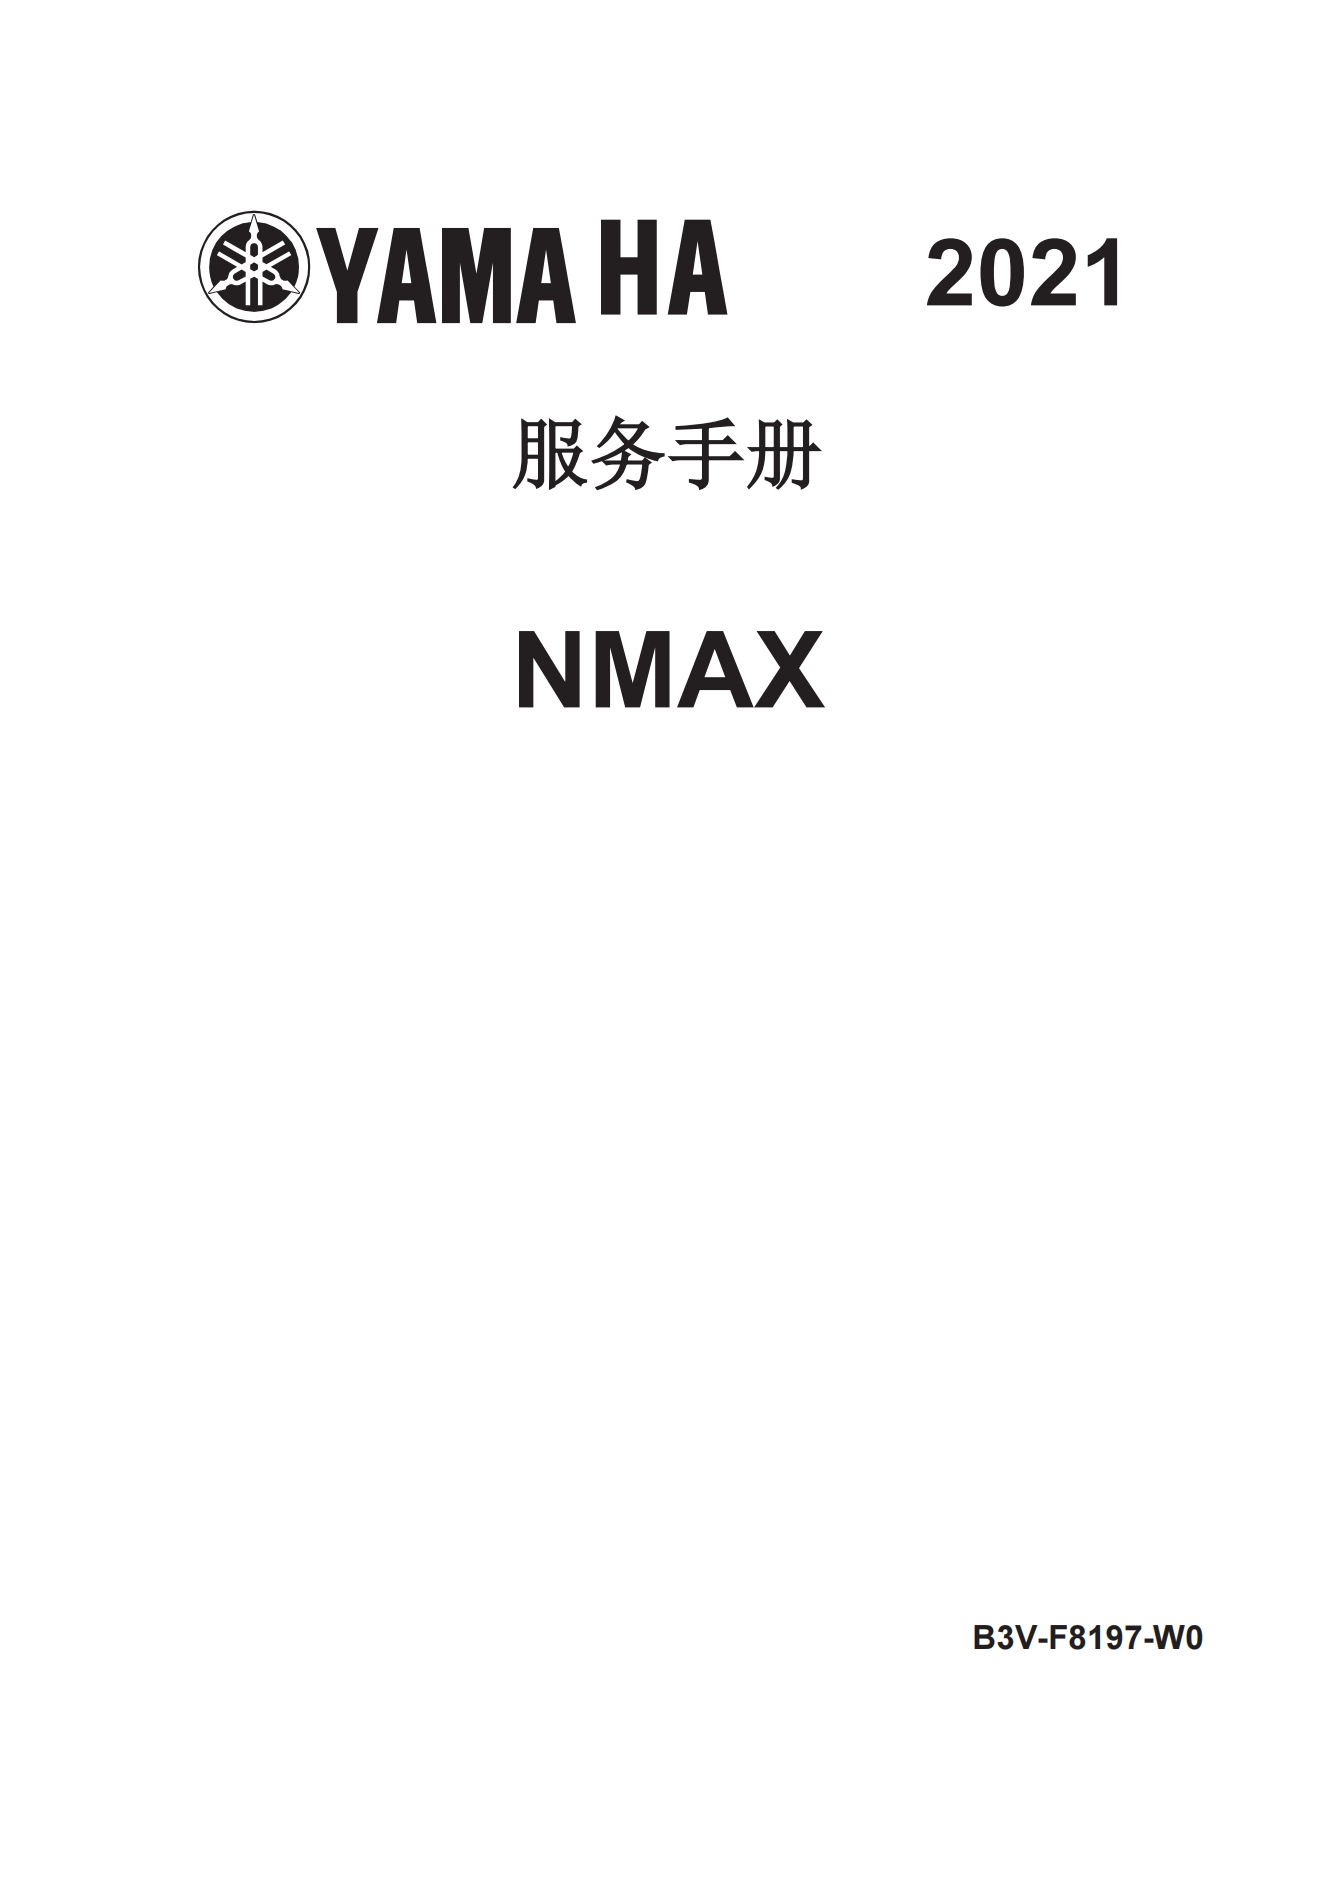 简体中文2021年雅马哈nmax155 tcs维修手册GPD150-A维修手册插图